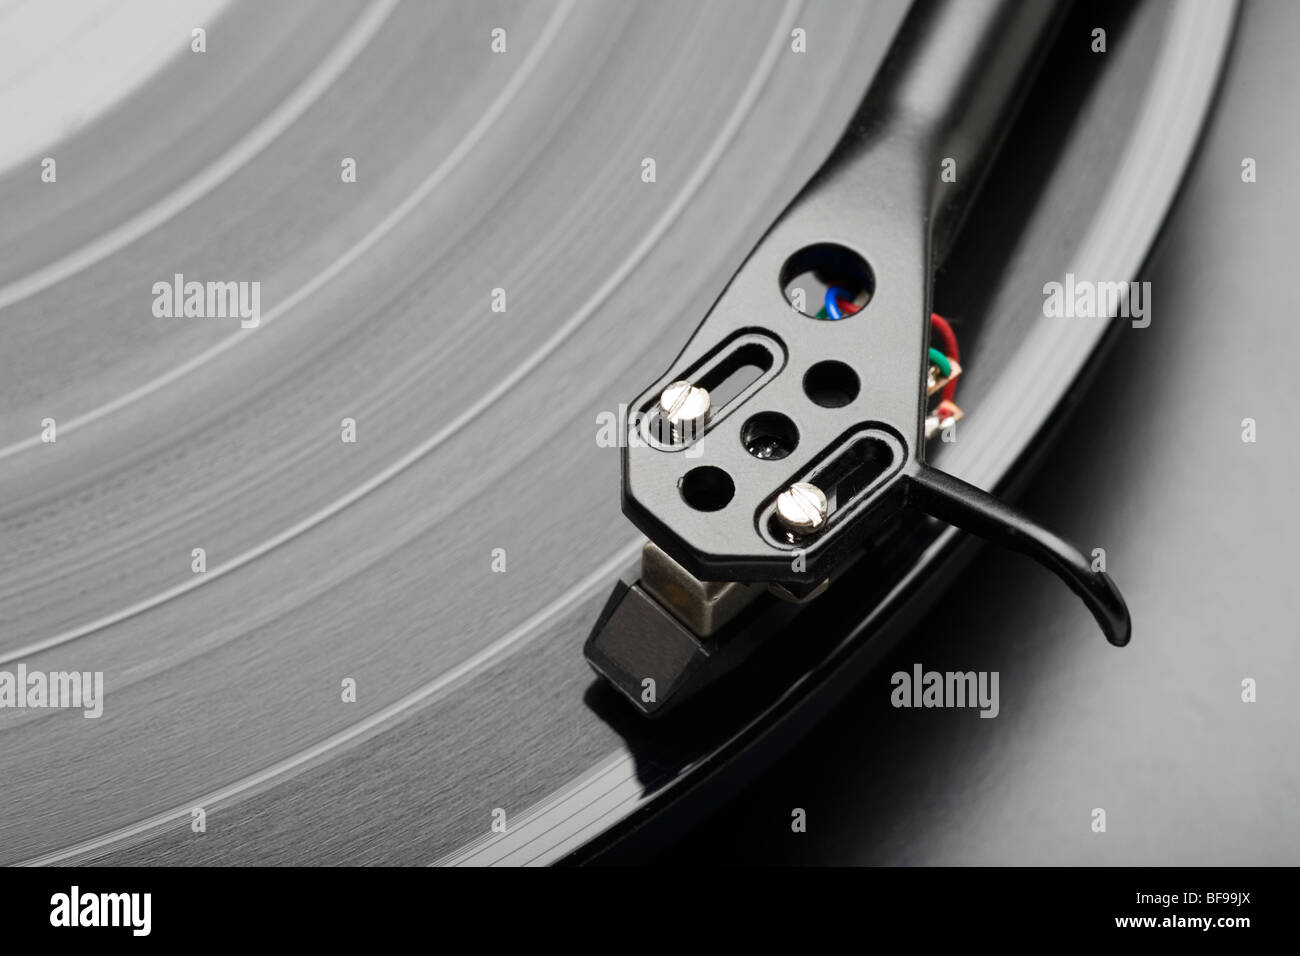 Aiguille de phonographe sur un LP Vinyl Record. Banque D'Images